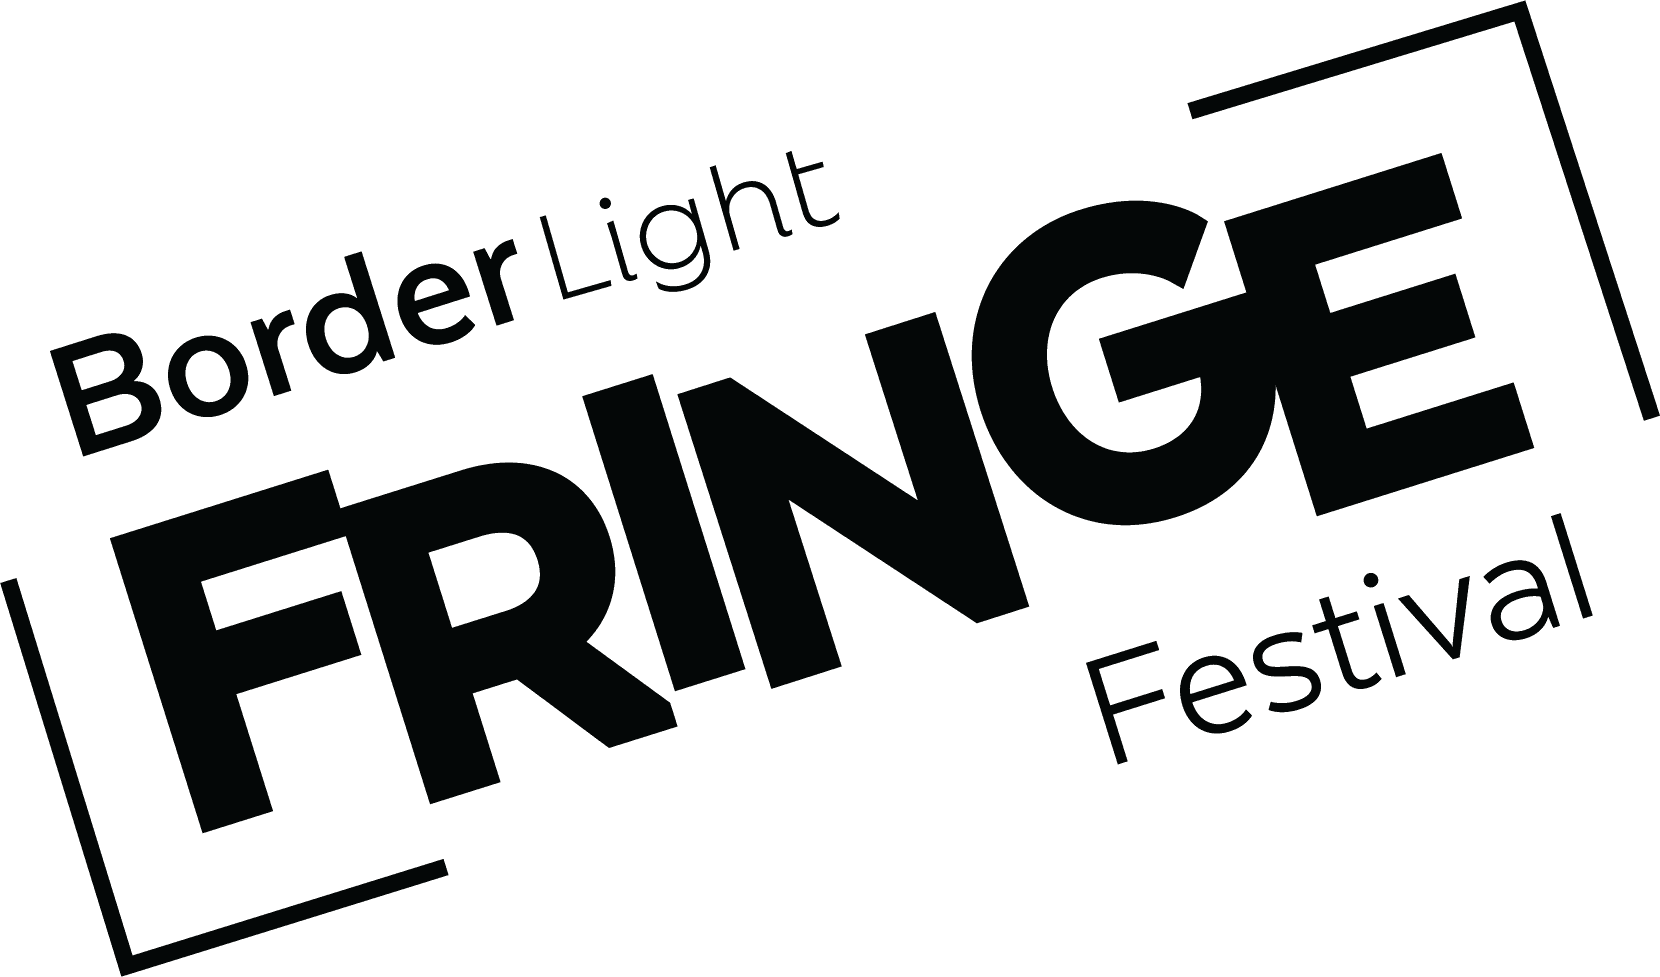 BorderLight International Theatre + Fringe Festival